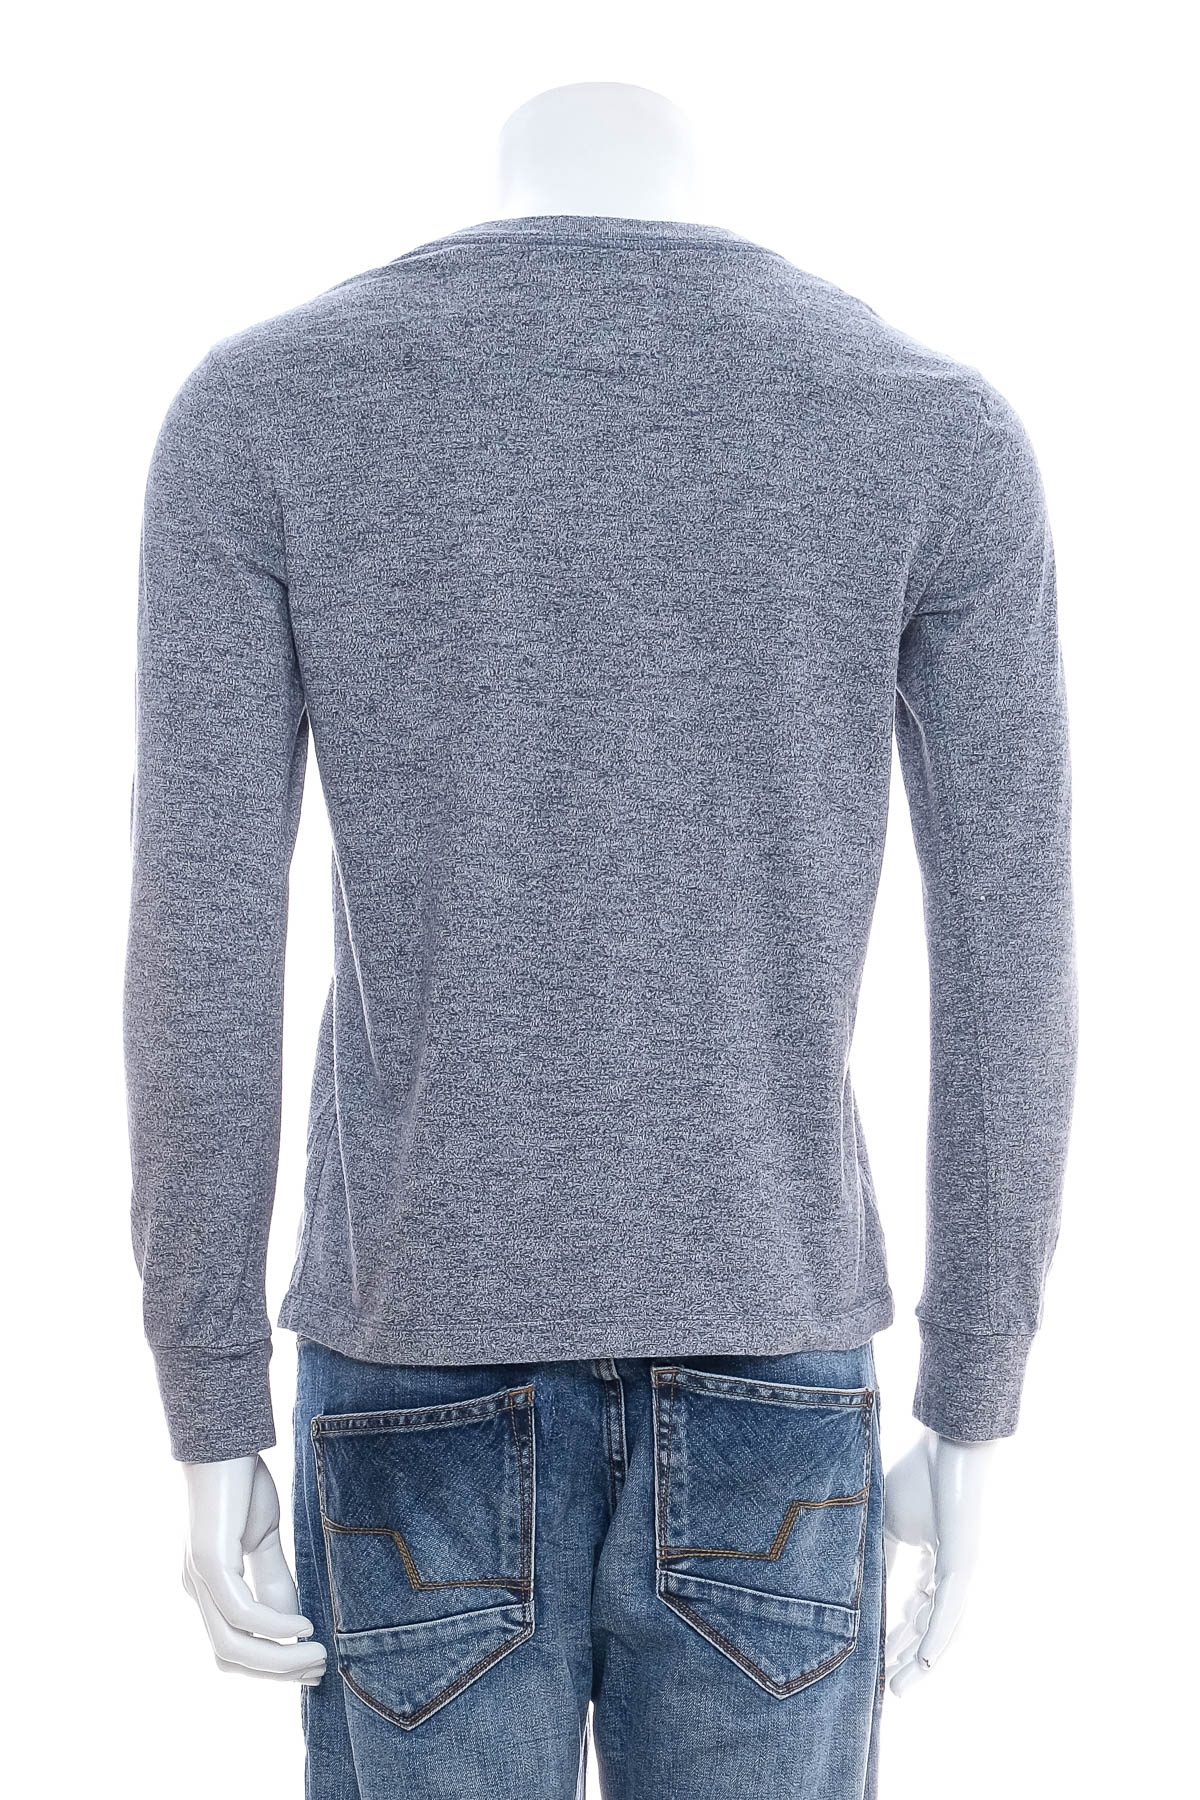 Ανδρική μπλούζα - Lawman Jeans - 1